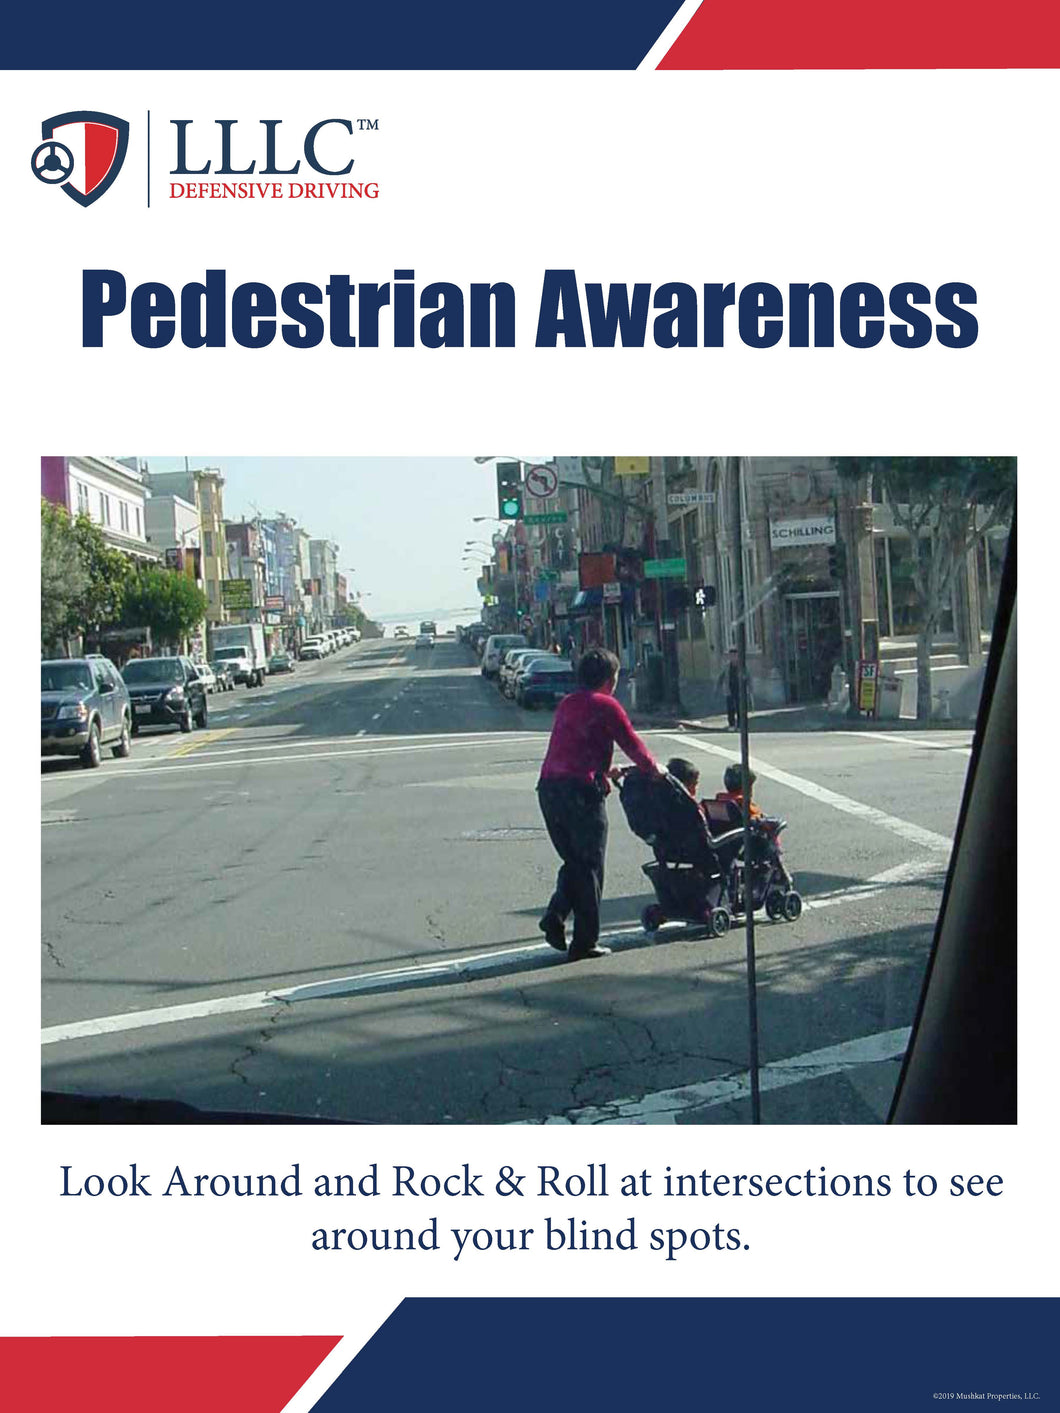 LLLC - Pedestrian Awareness